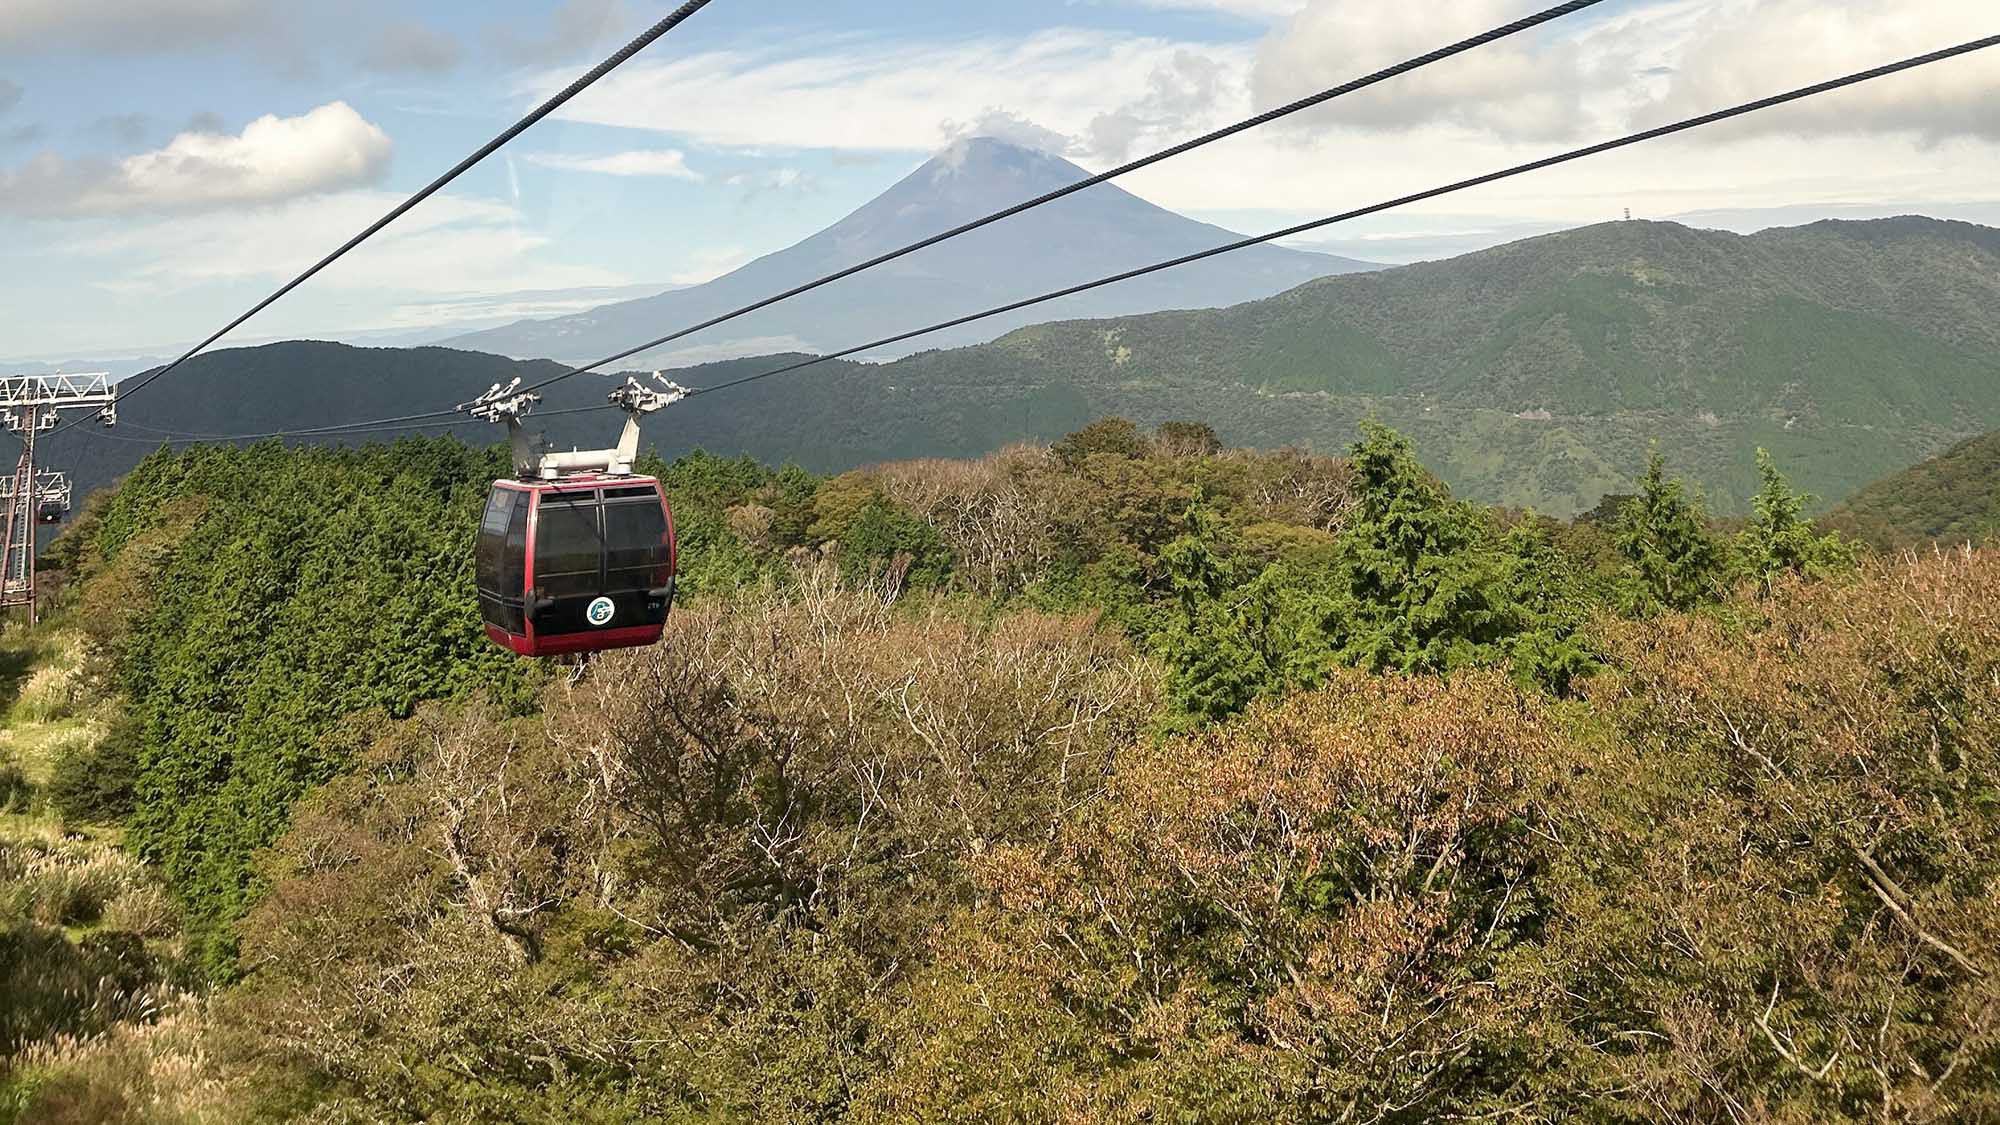 ・【箱根ロープウェイ】桃源台方向に向かう途中には富士山もご覧いただけます